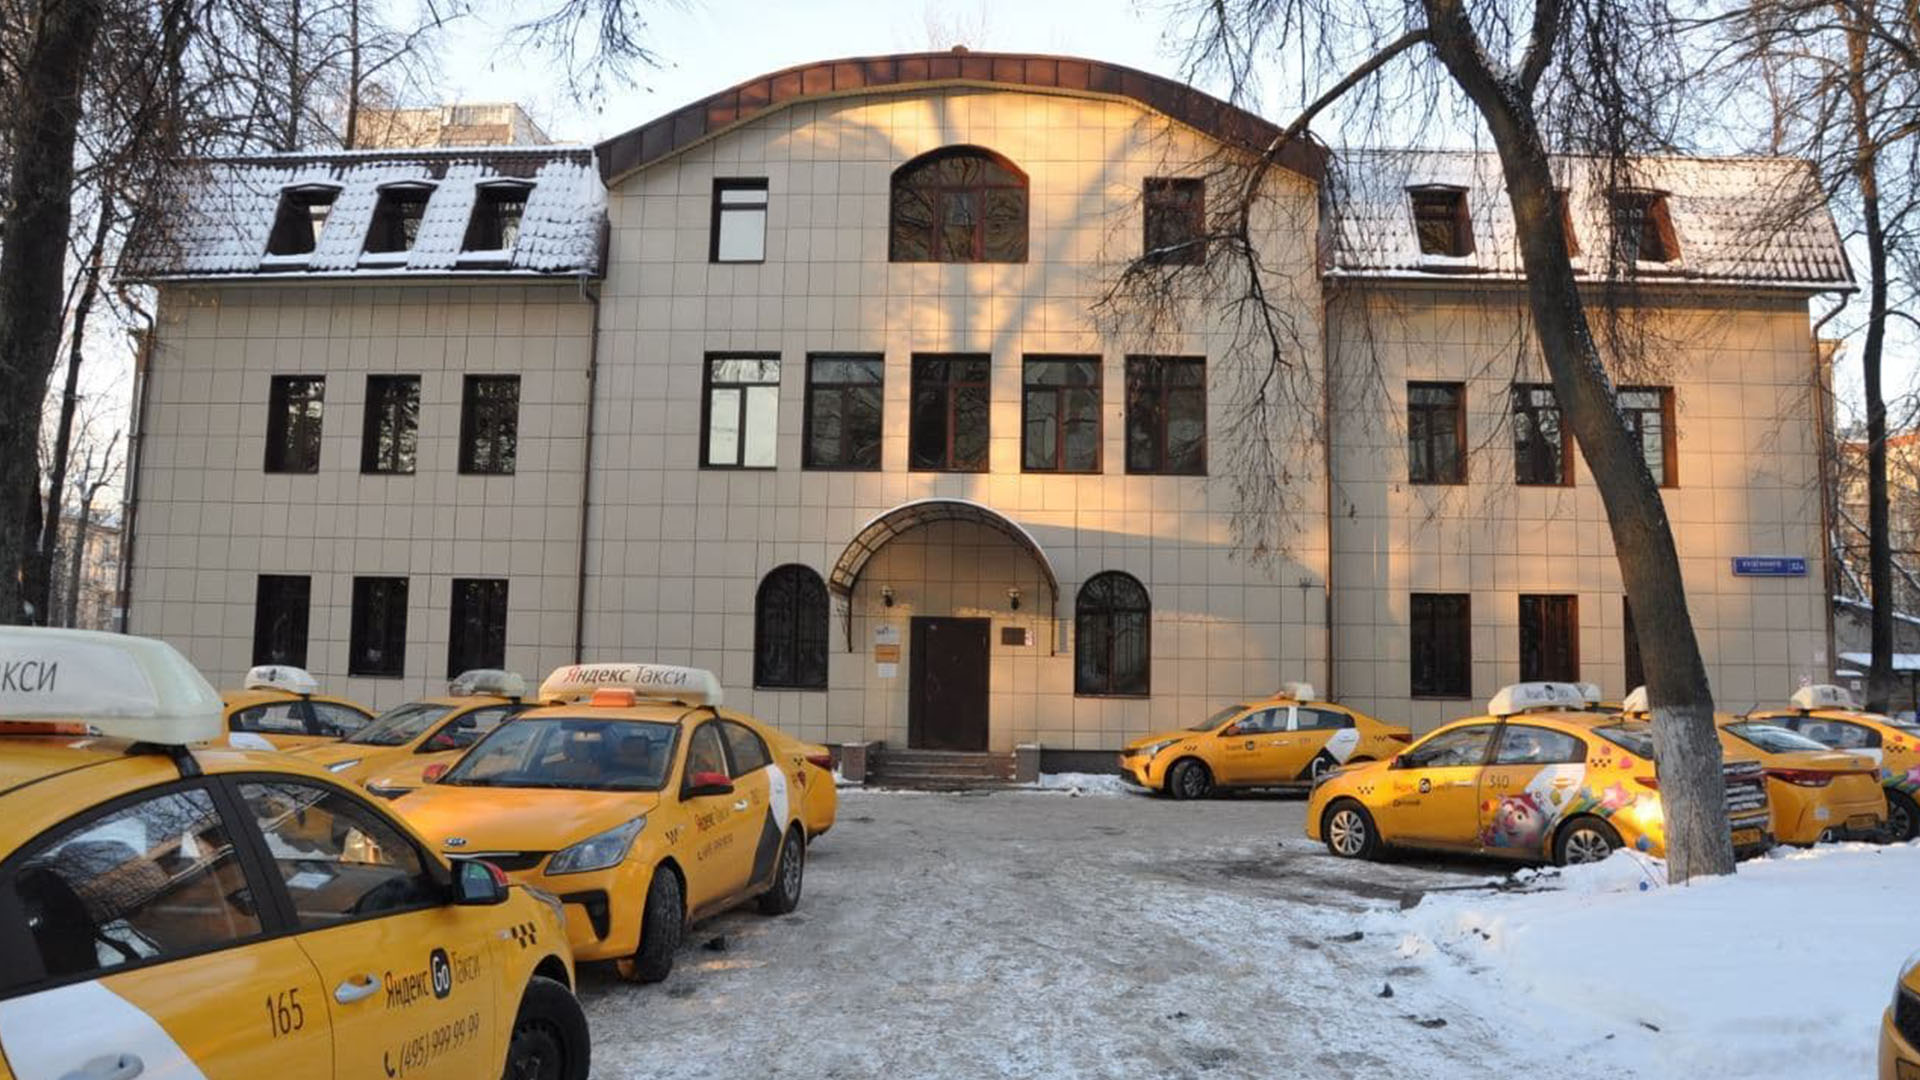 Участники московской бизнес-прокачки узнали секреты успешной “штатной” схемы такси